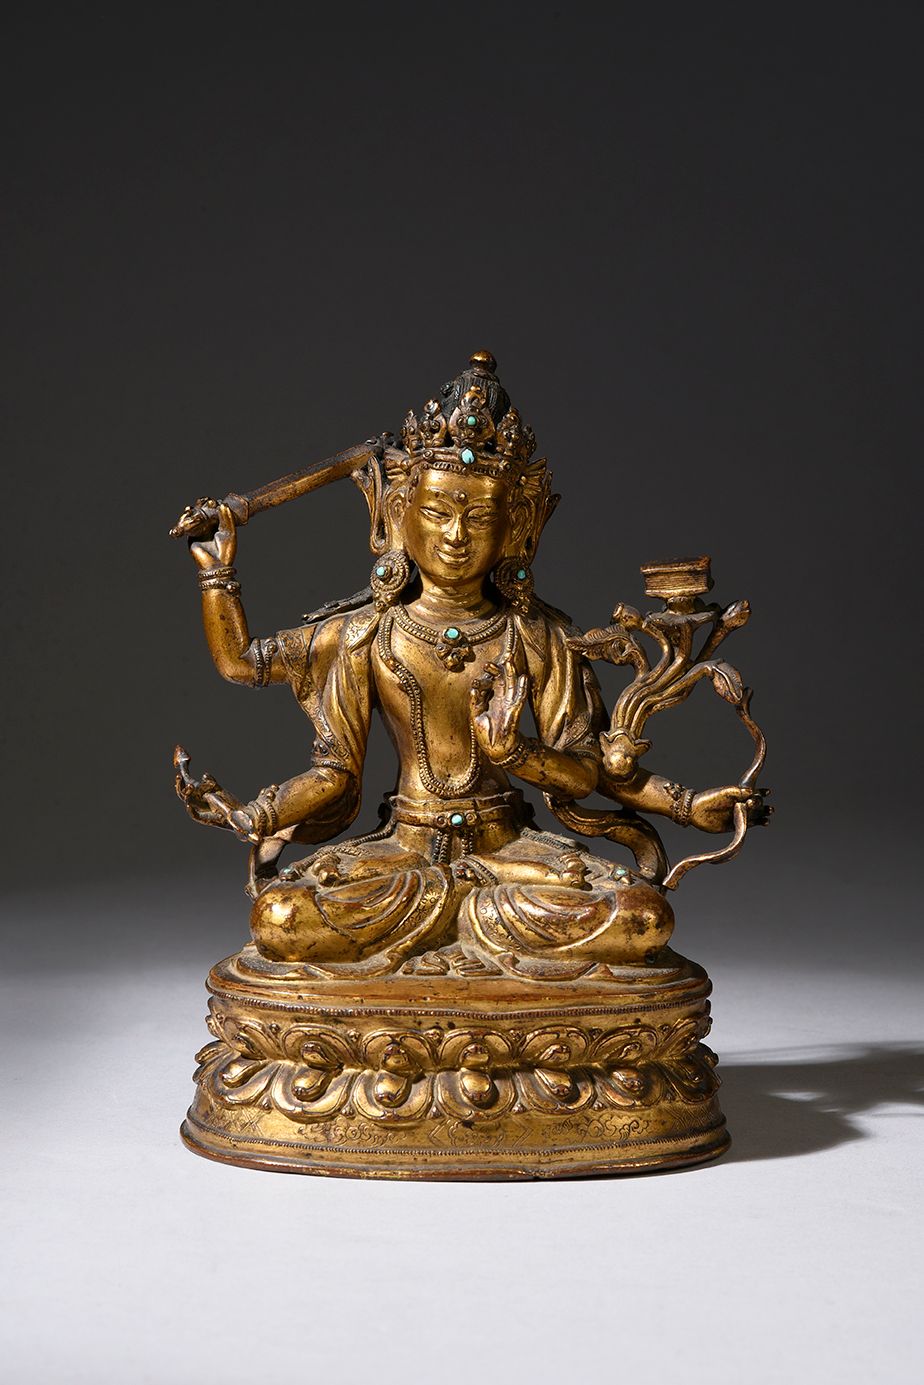 Null Rama-Figur
Bronzeskulptur der indischen Gottheit Rama, des siebten Avatars &hellip;